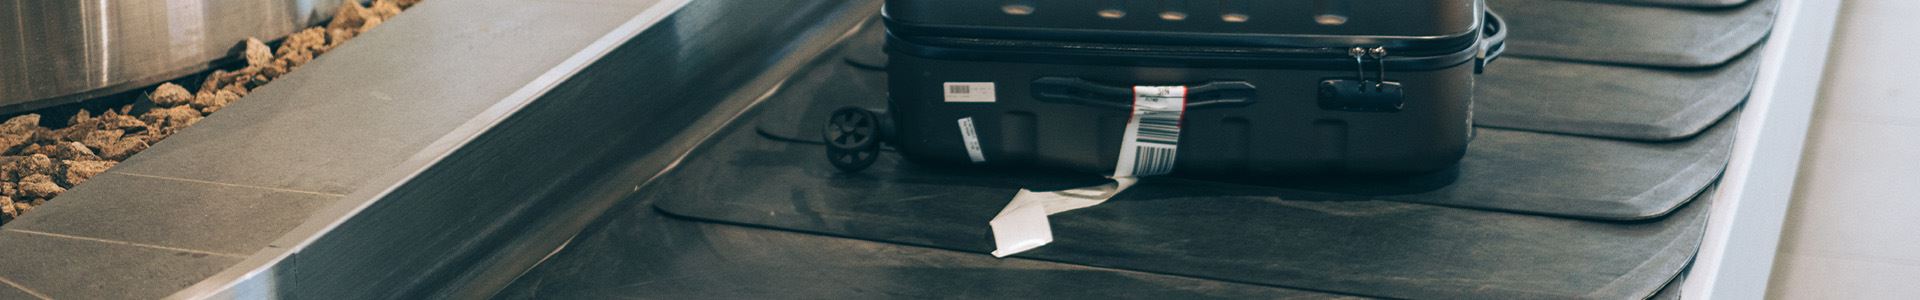 Imagem constituída por uma mala preta rigída, com rodas, pegas superior e lateral e uma etiqueta de bagagem branca na pega lateral, deitada sobre um tapete de recolha de bagagem do aeroporto.